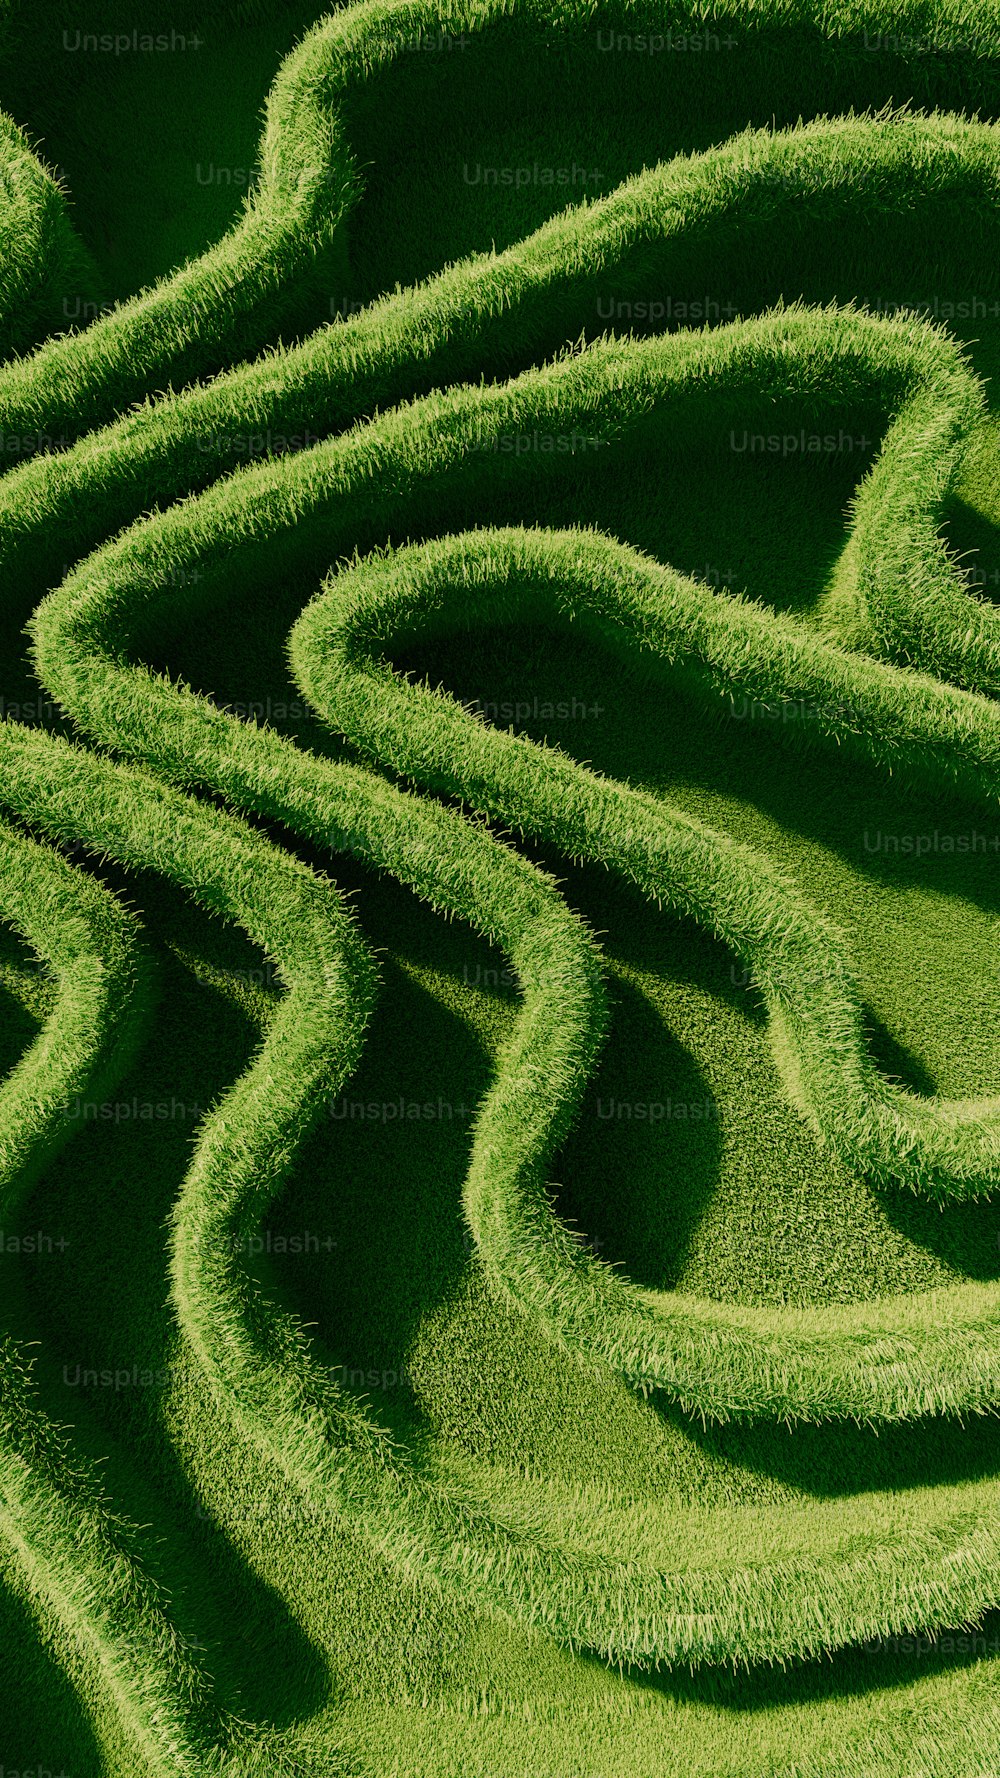 Un primo piano di un disegno di erba verde